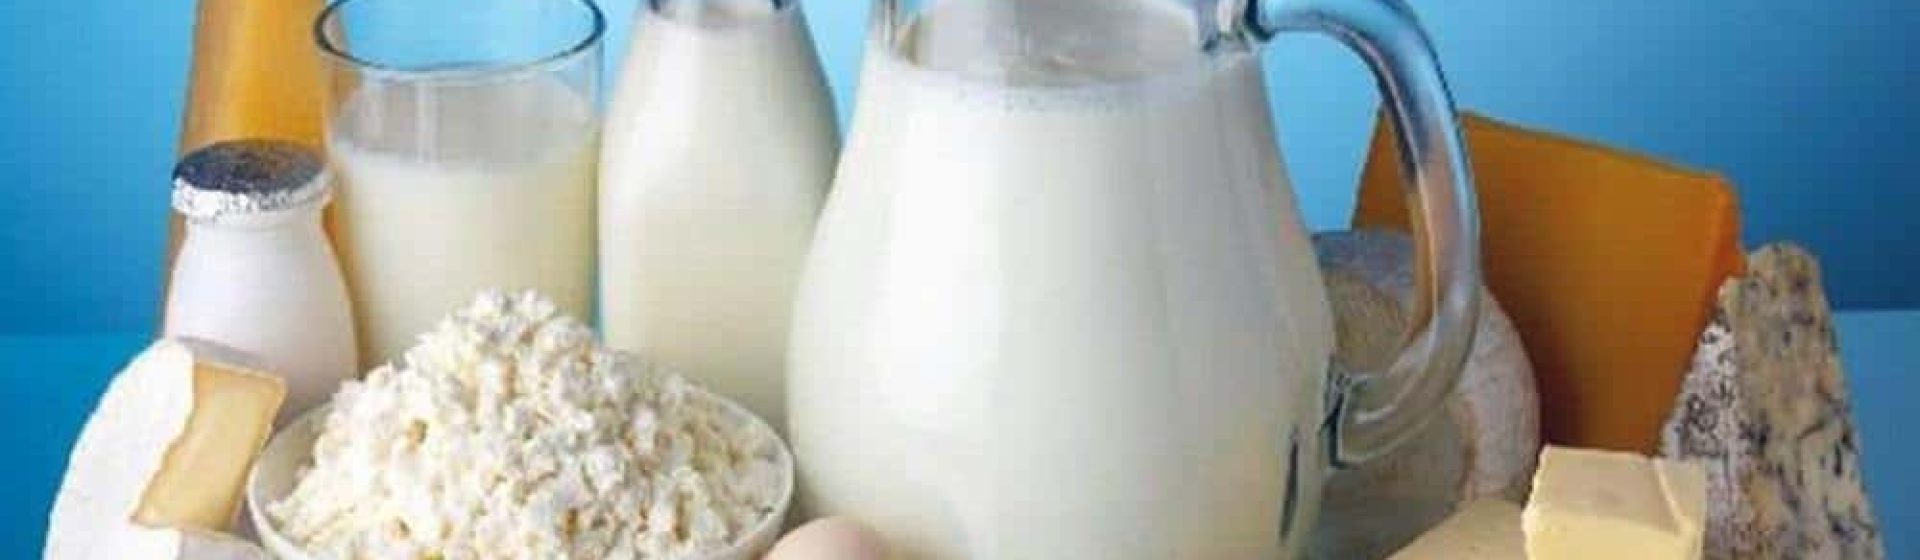 Anka Süt ve Süt Ürünleri